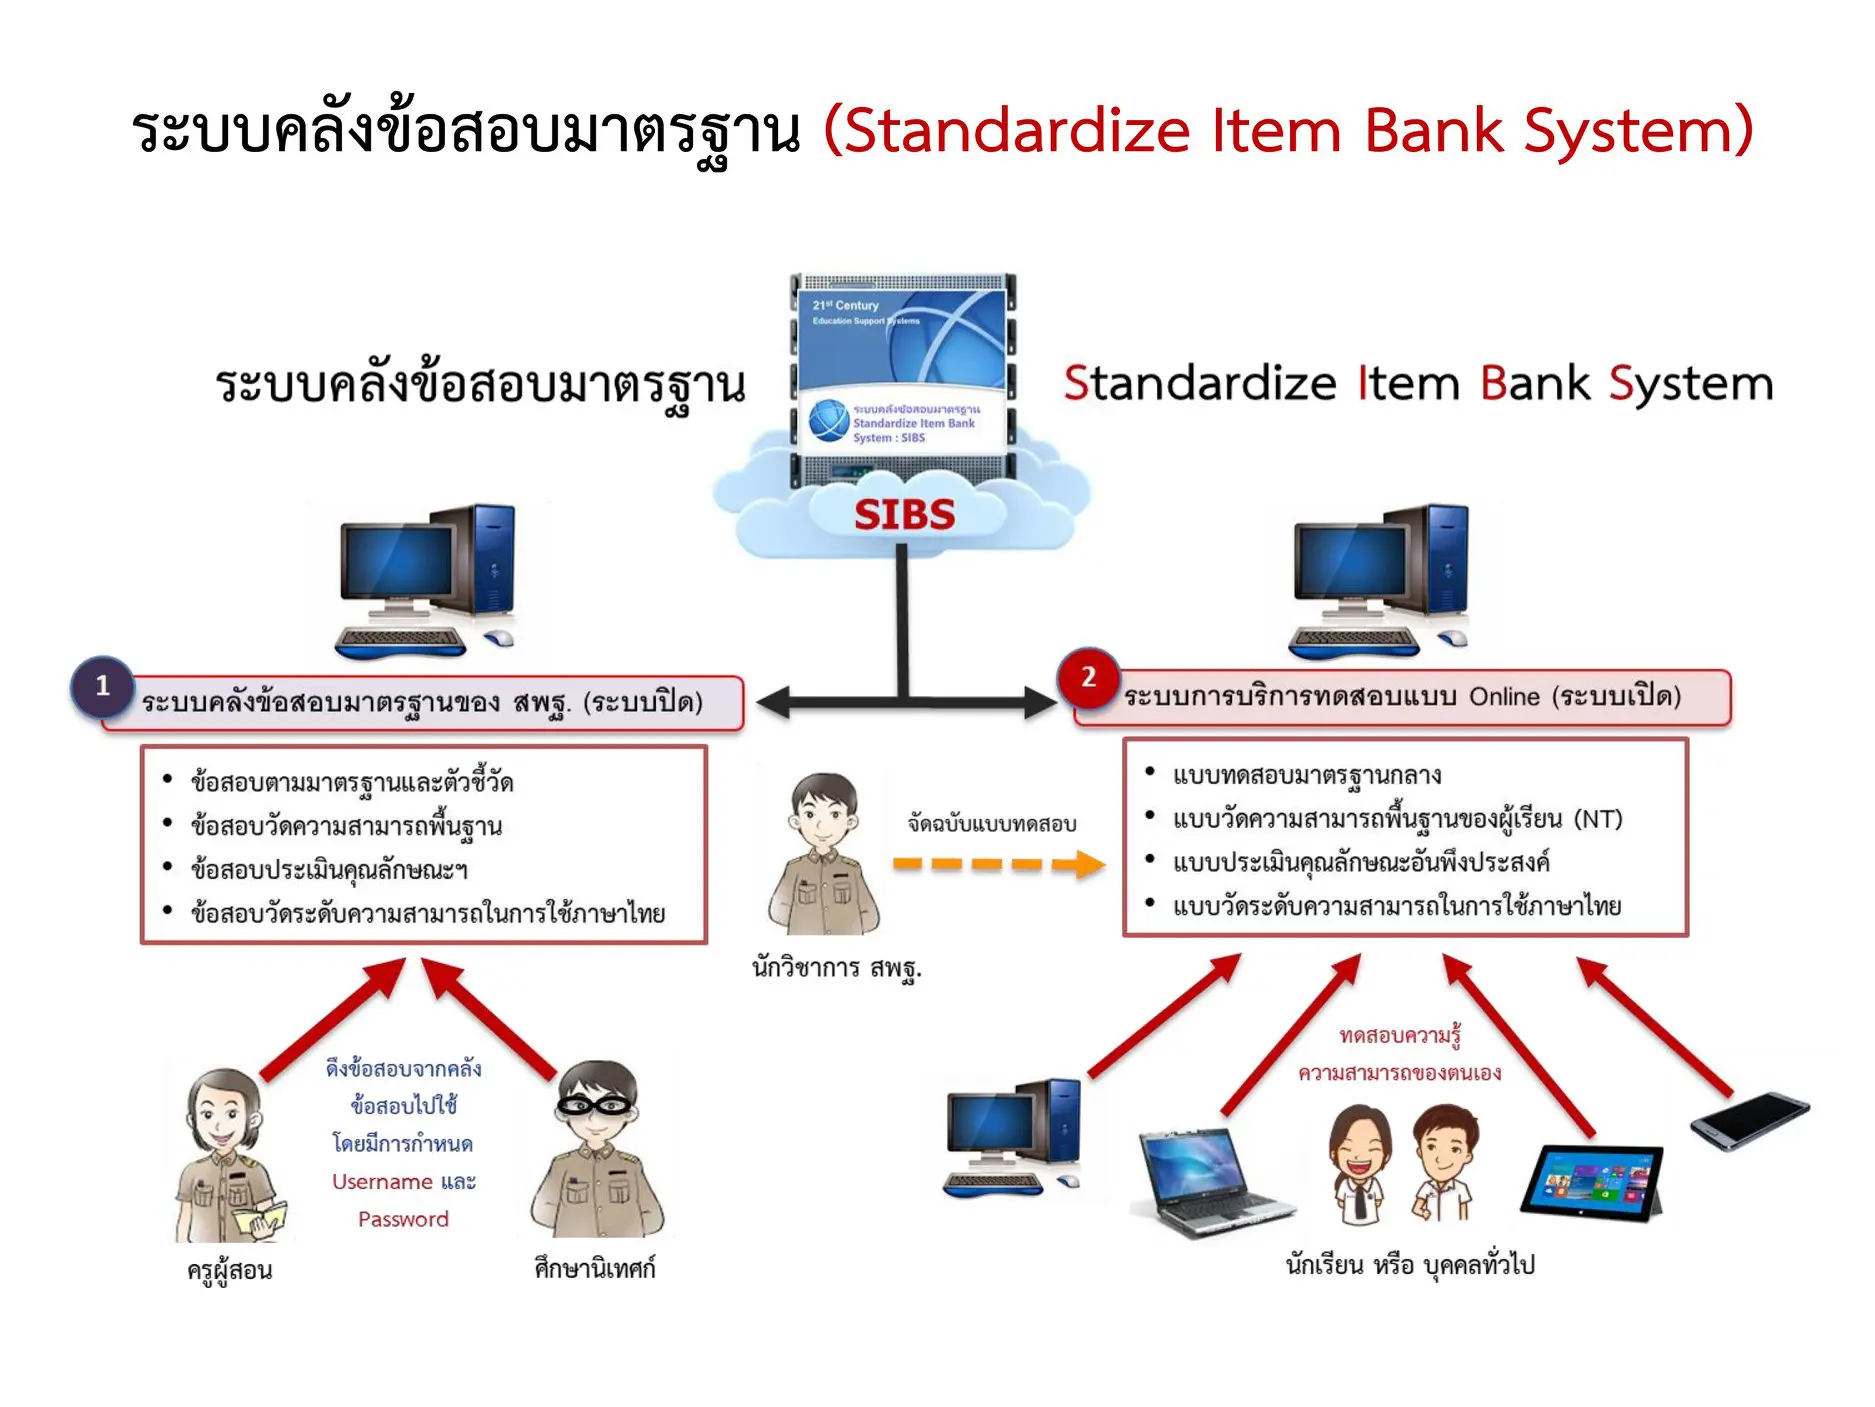 ระบบคลังข้อสอบมาตรฐานออนไลน์ (Standardized Item Bank System: SIBS) 